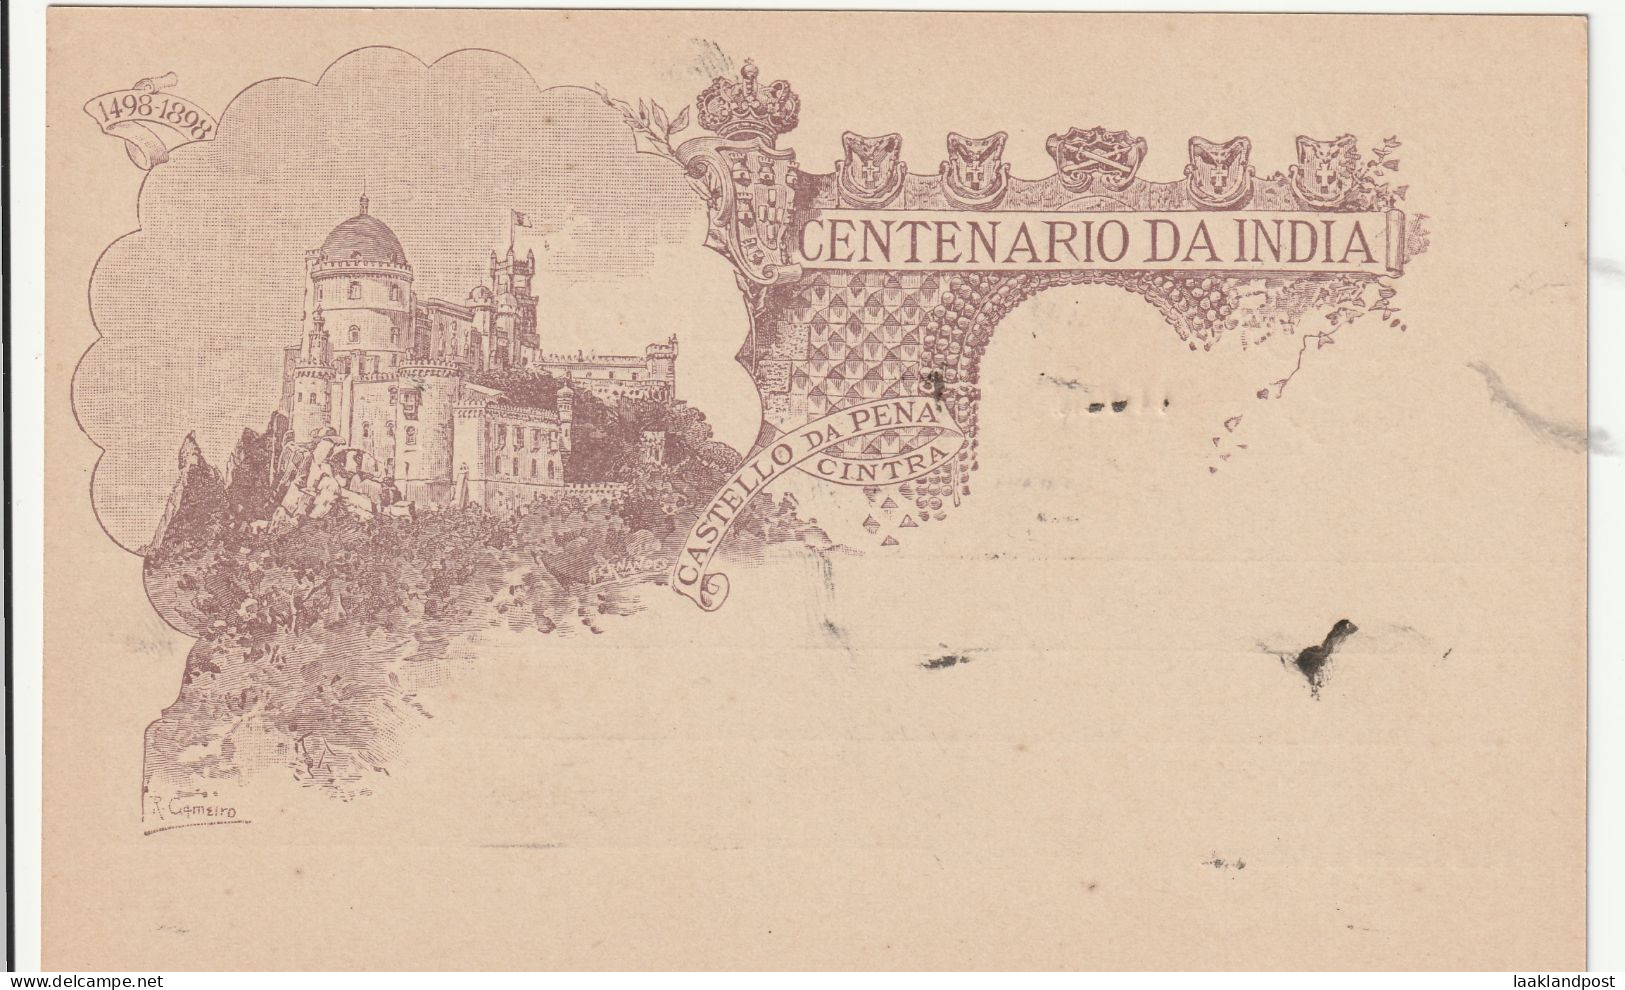 Portugiesisch Afrika 1898 Illustrated Postcard, 20 Reis, Vasco Da Gama, "Castello Da Pena Centra "unused - Afrique Portugaise